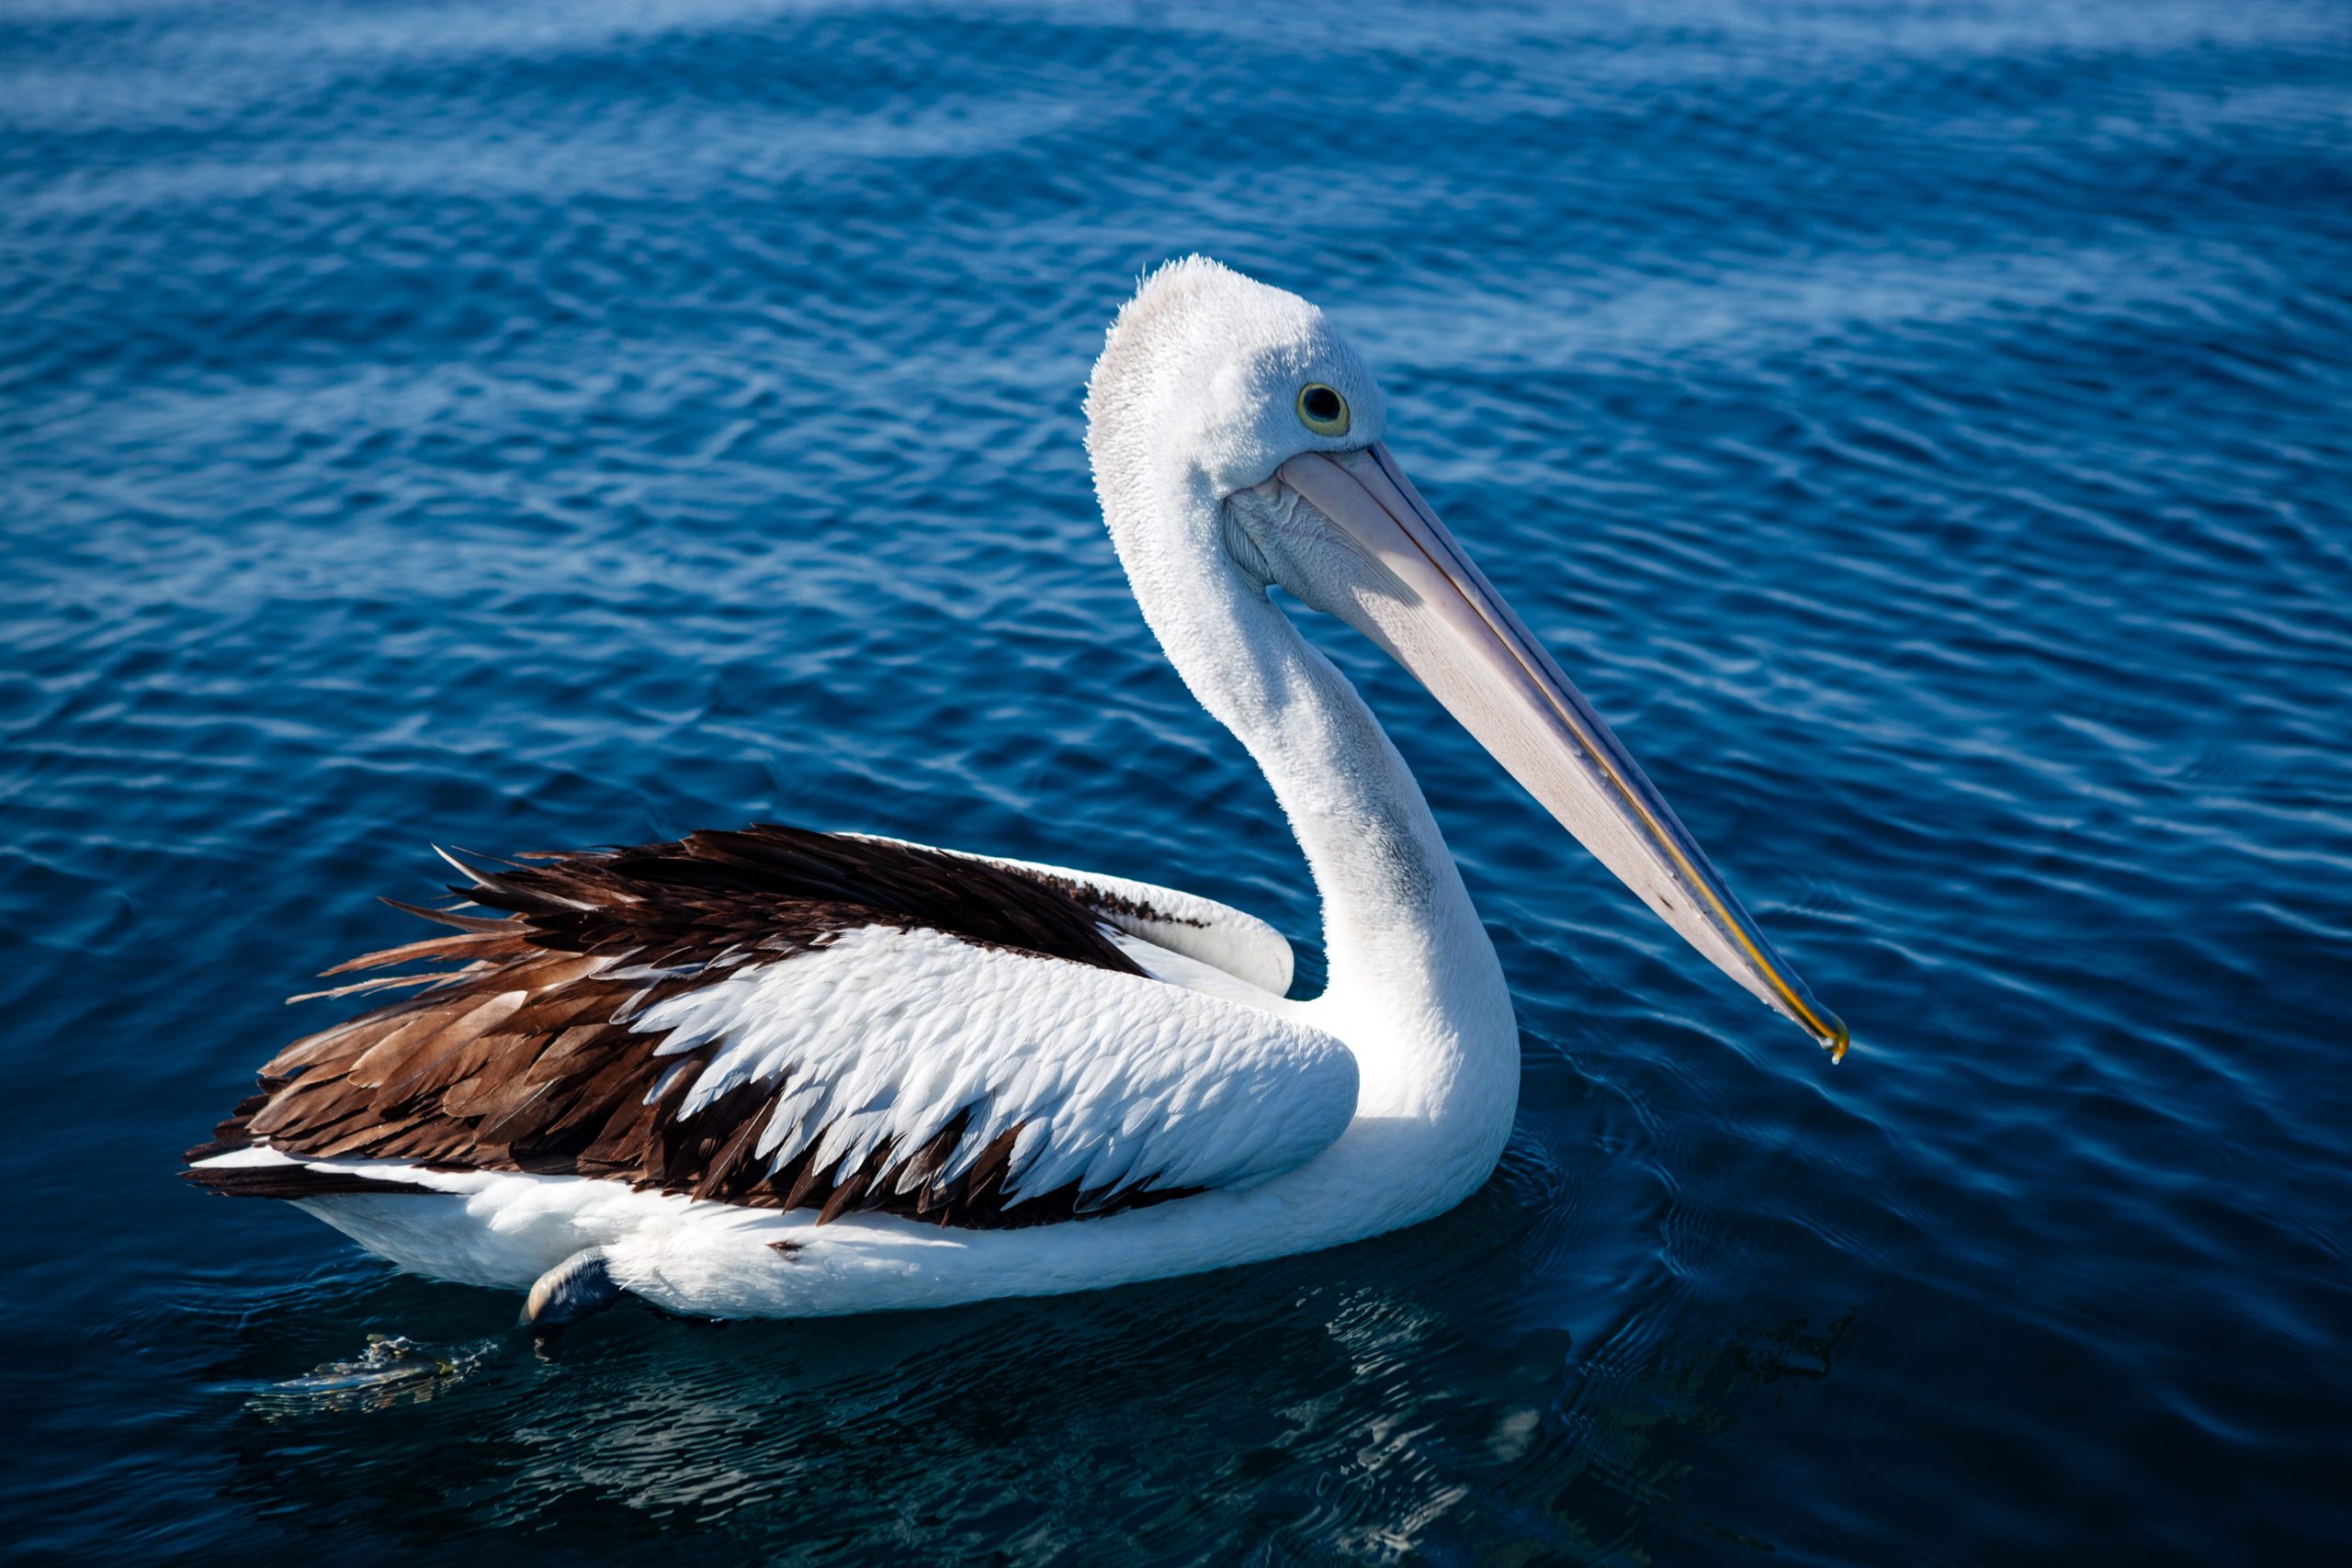 Long Beach aquarium releases rehabilitated pelicans [Video]